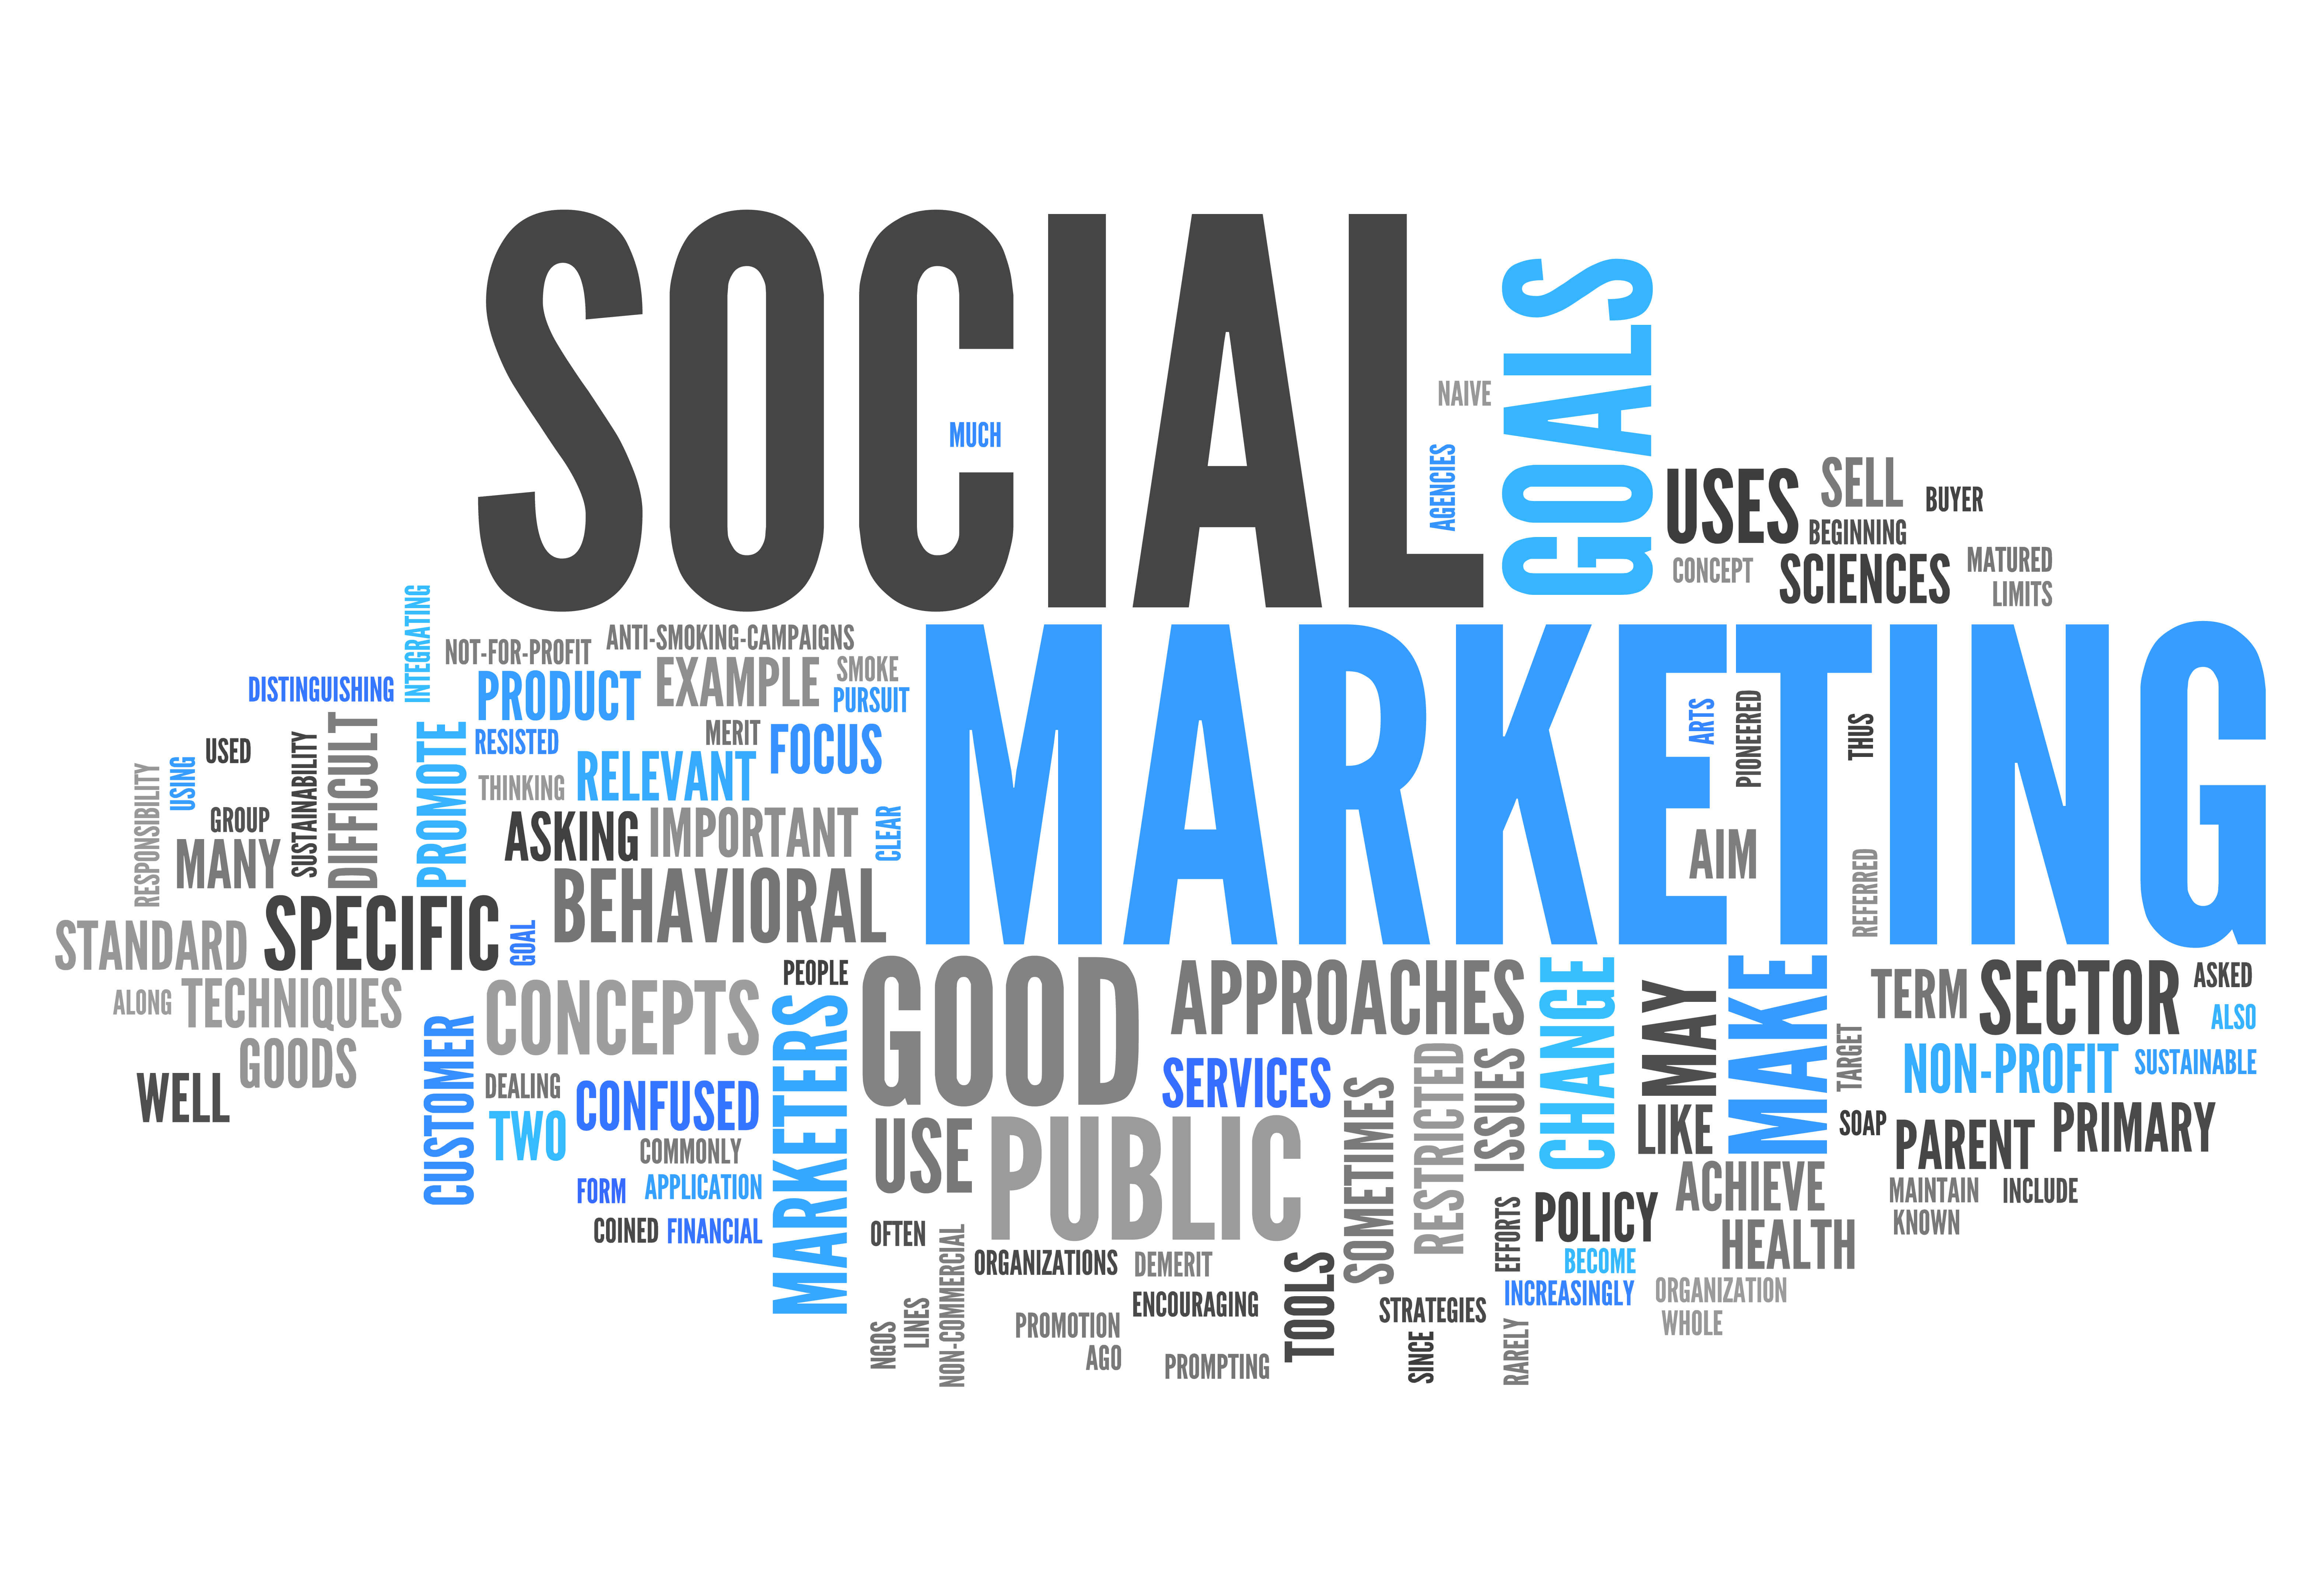 social media, content marketing, future trends, advertising, marketing, digital marketing